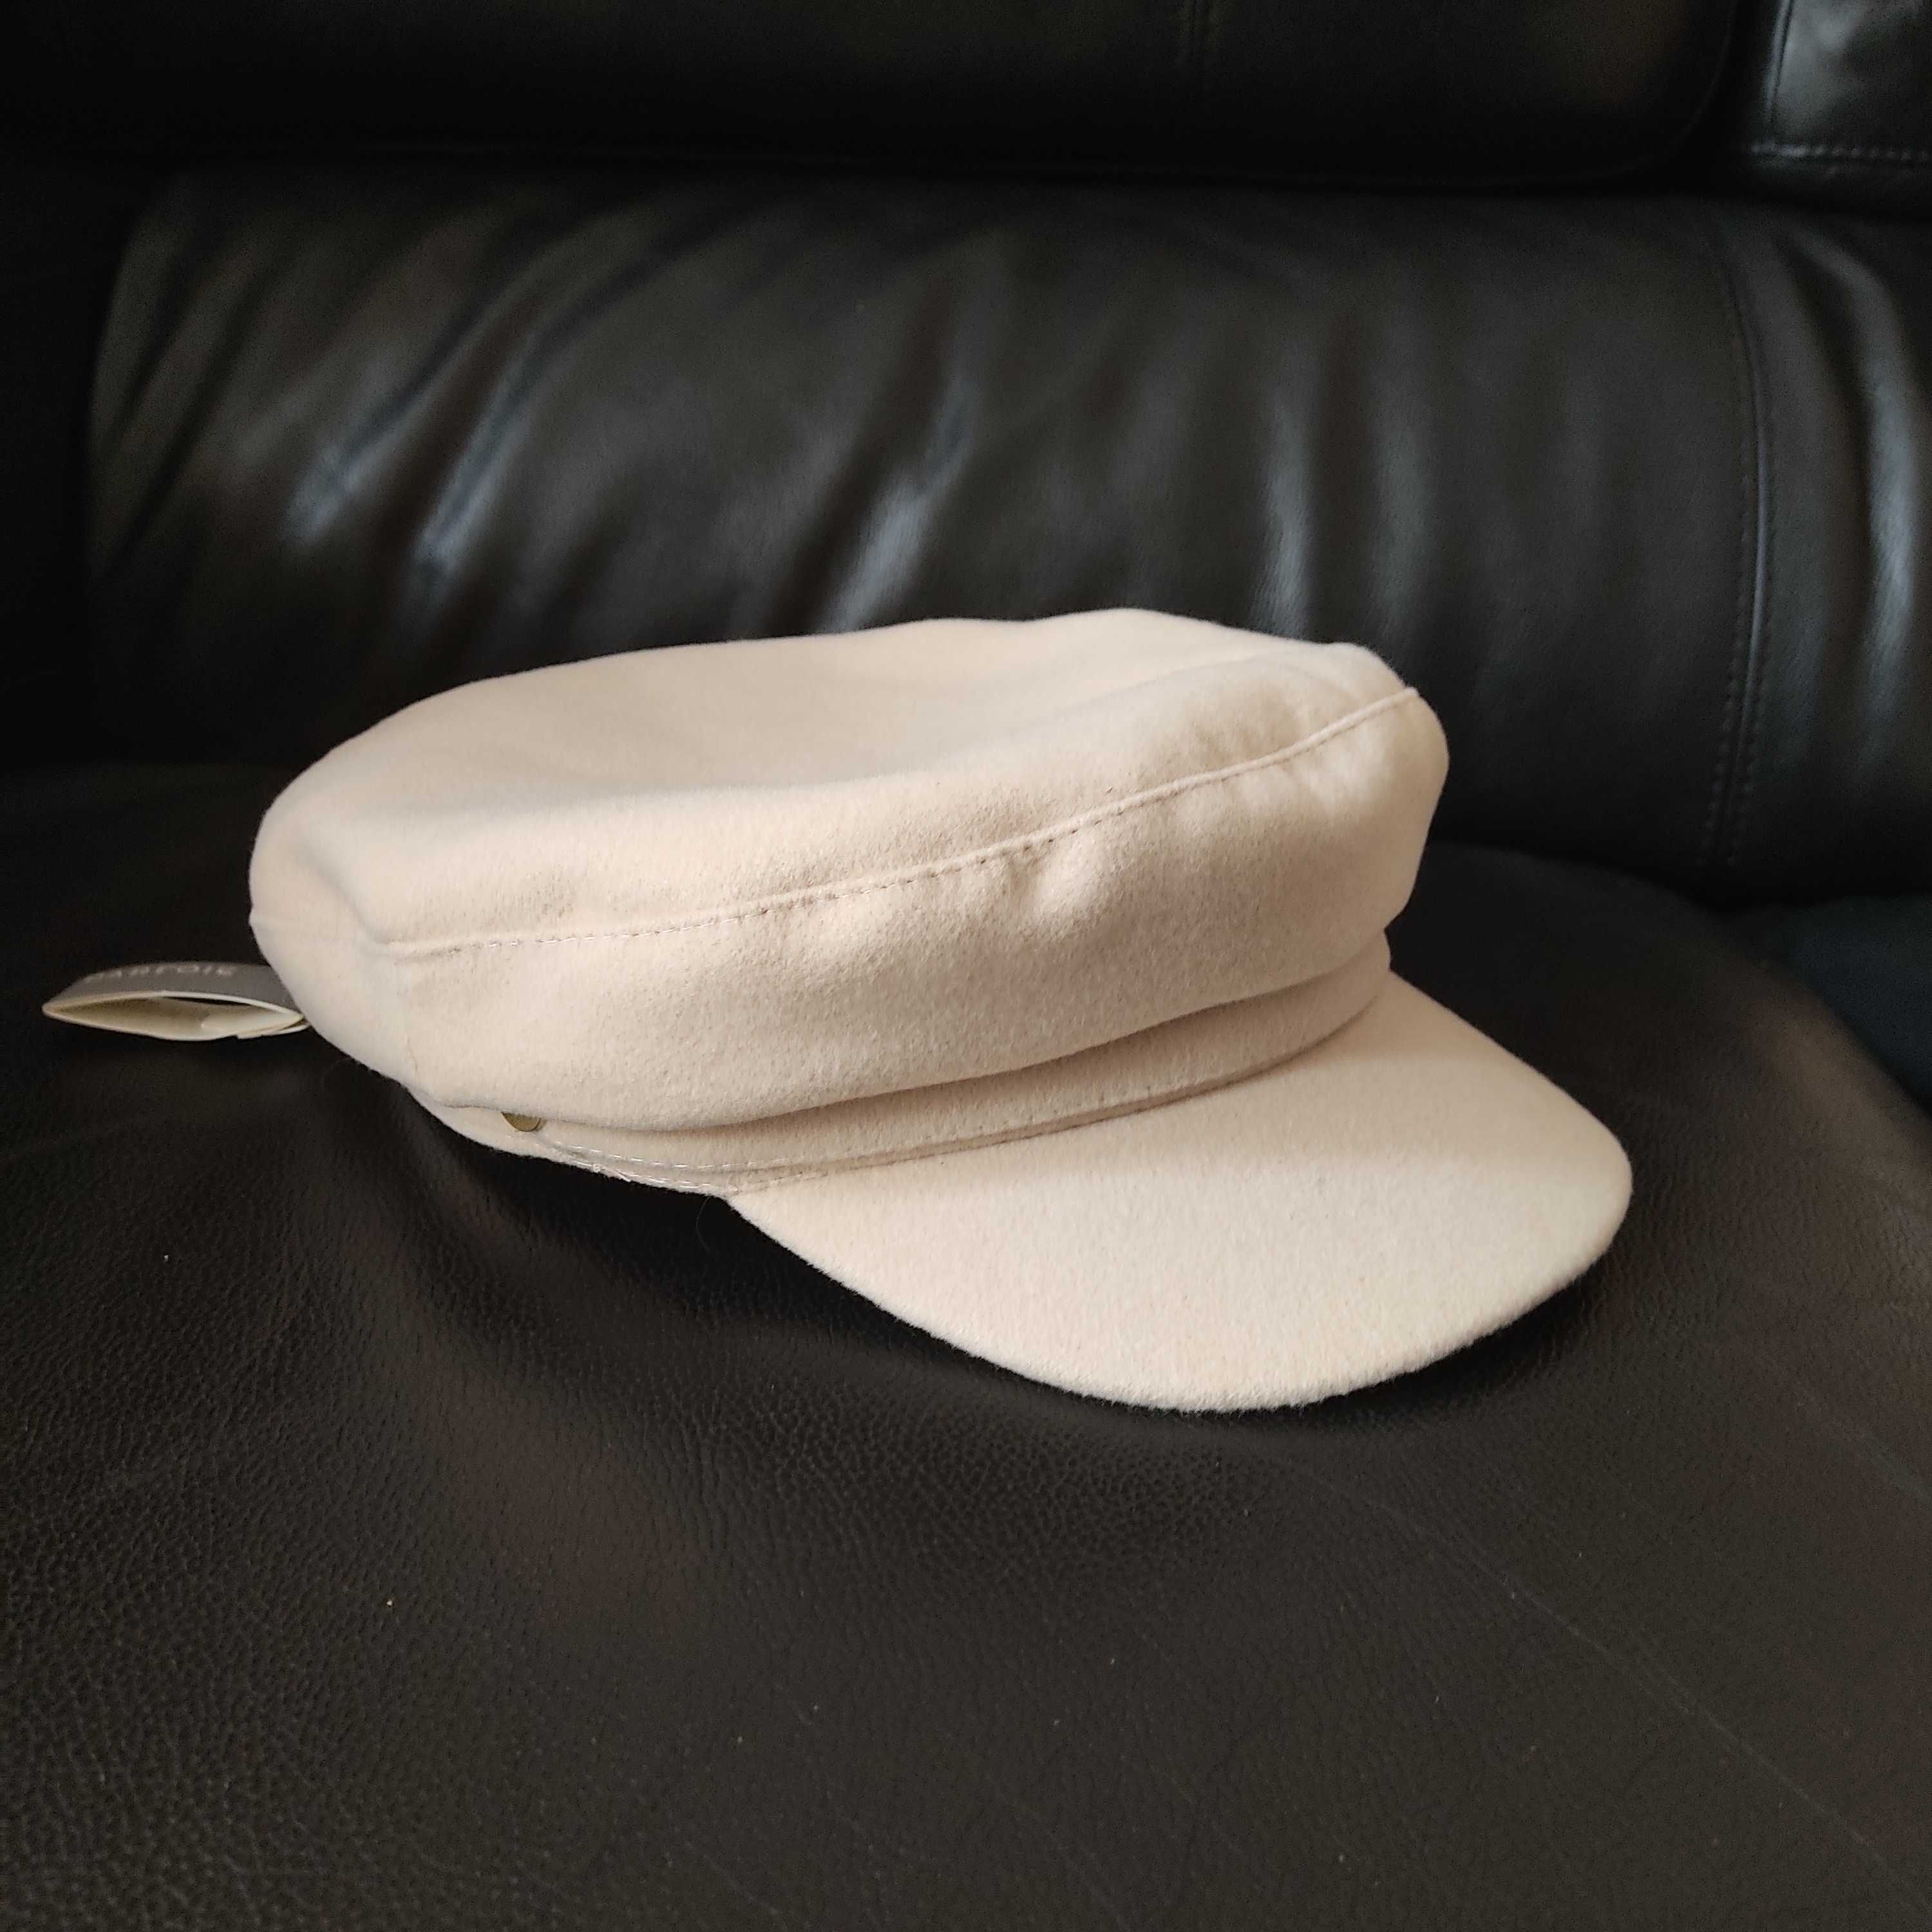 Chapéu novo com etiqueta